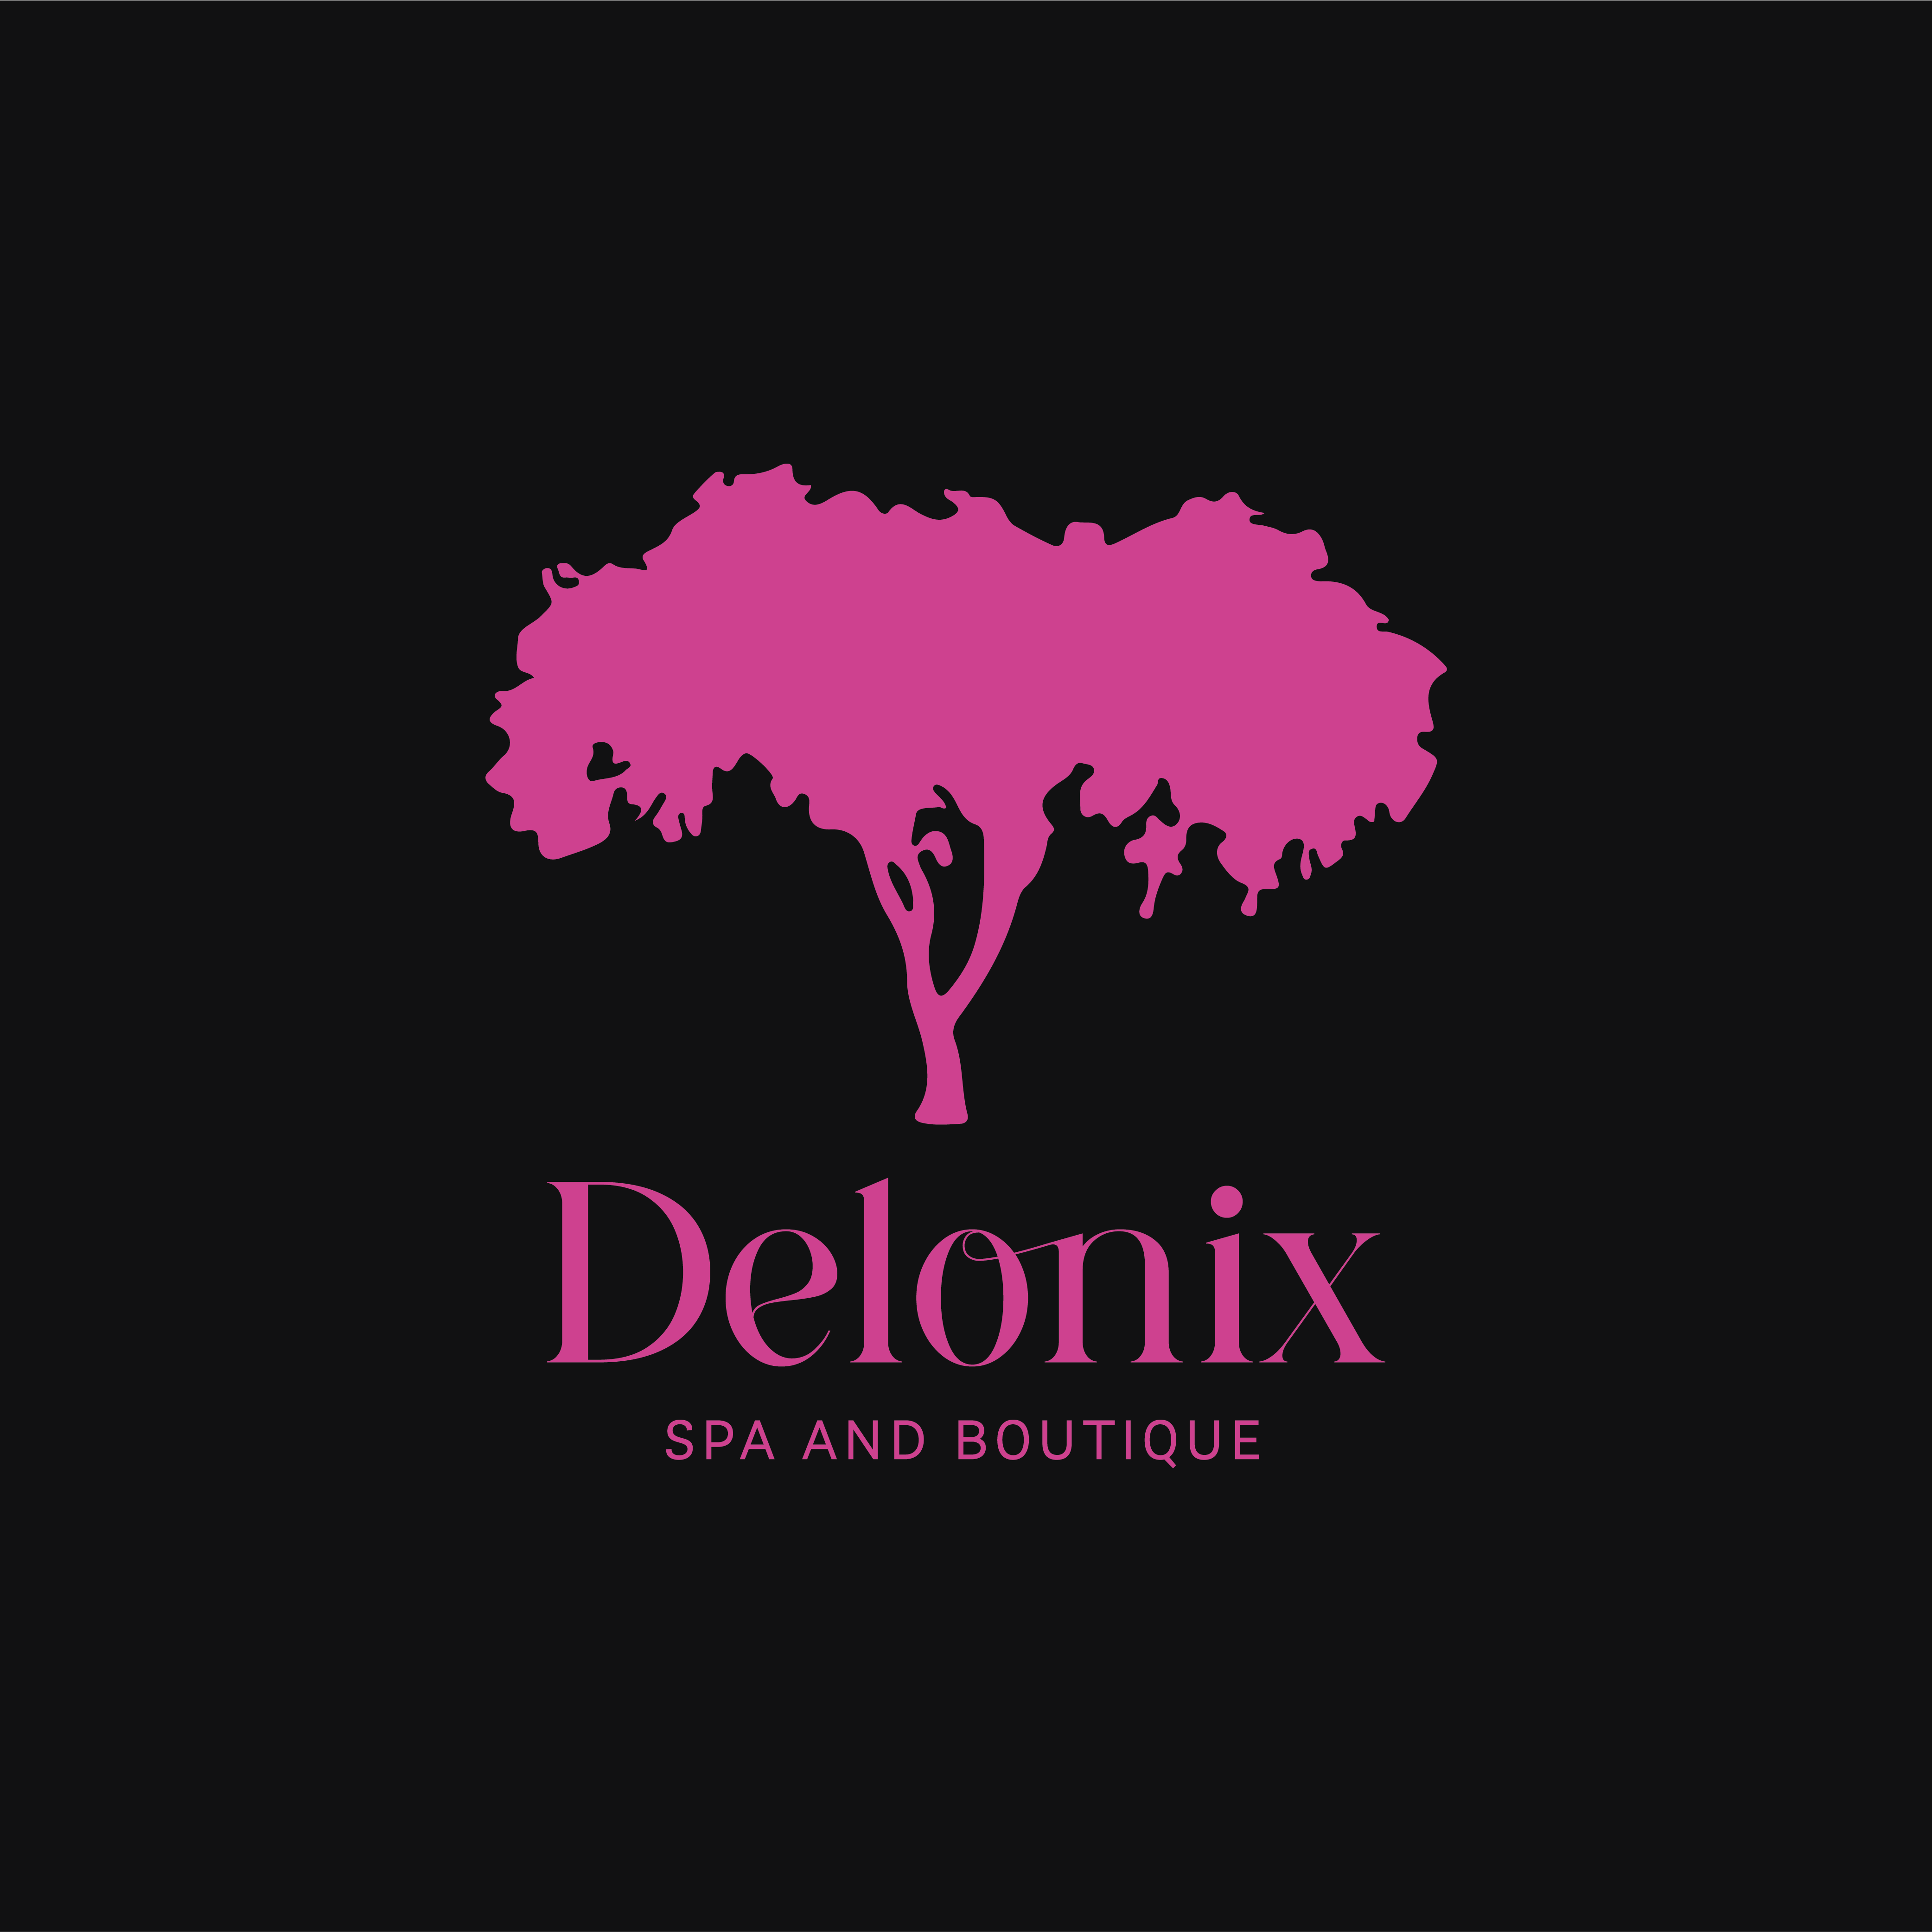 Delonix Spa and Boutique